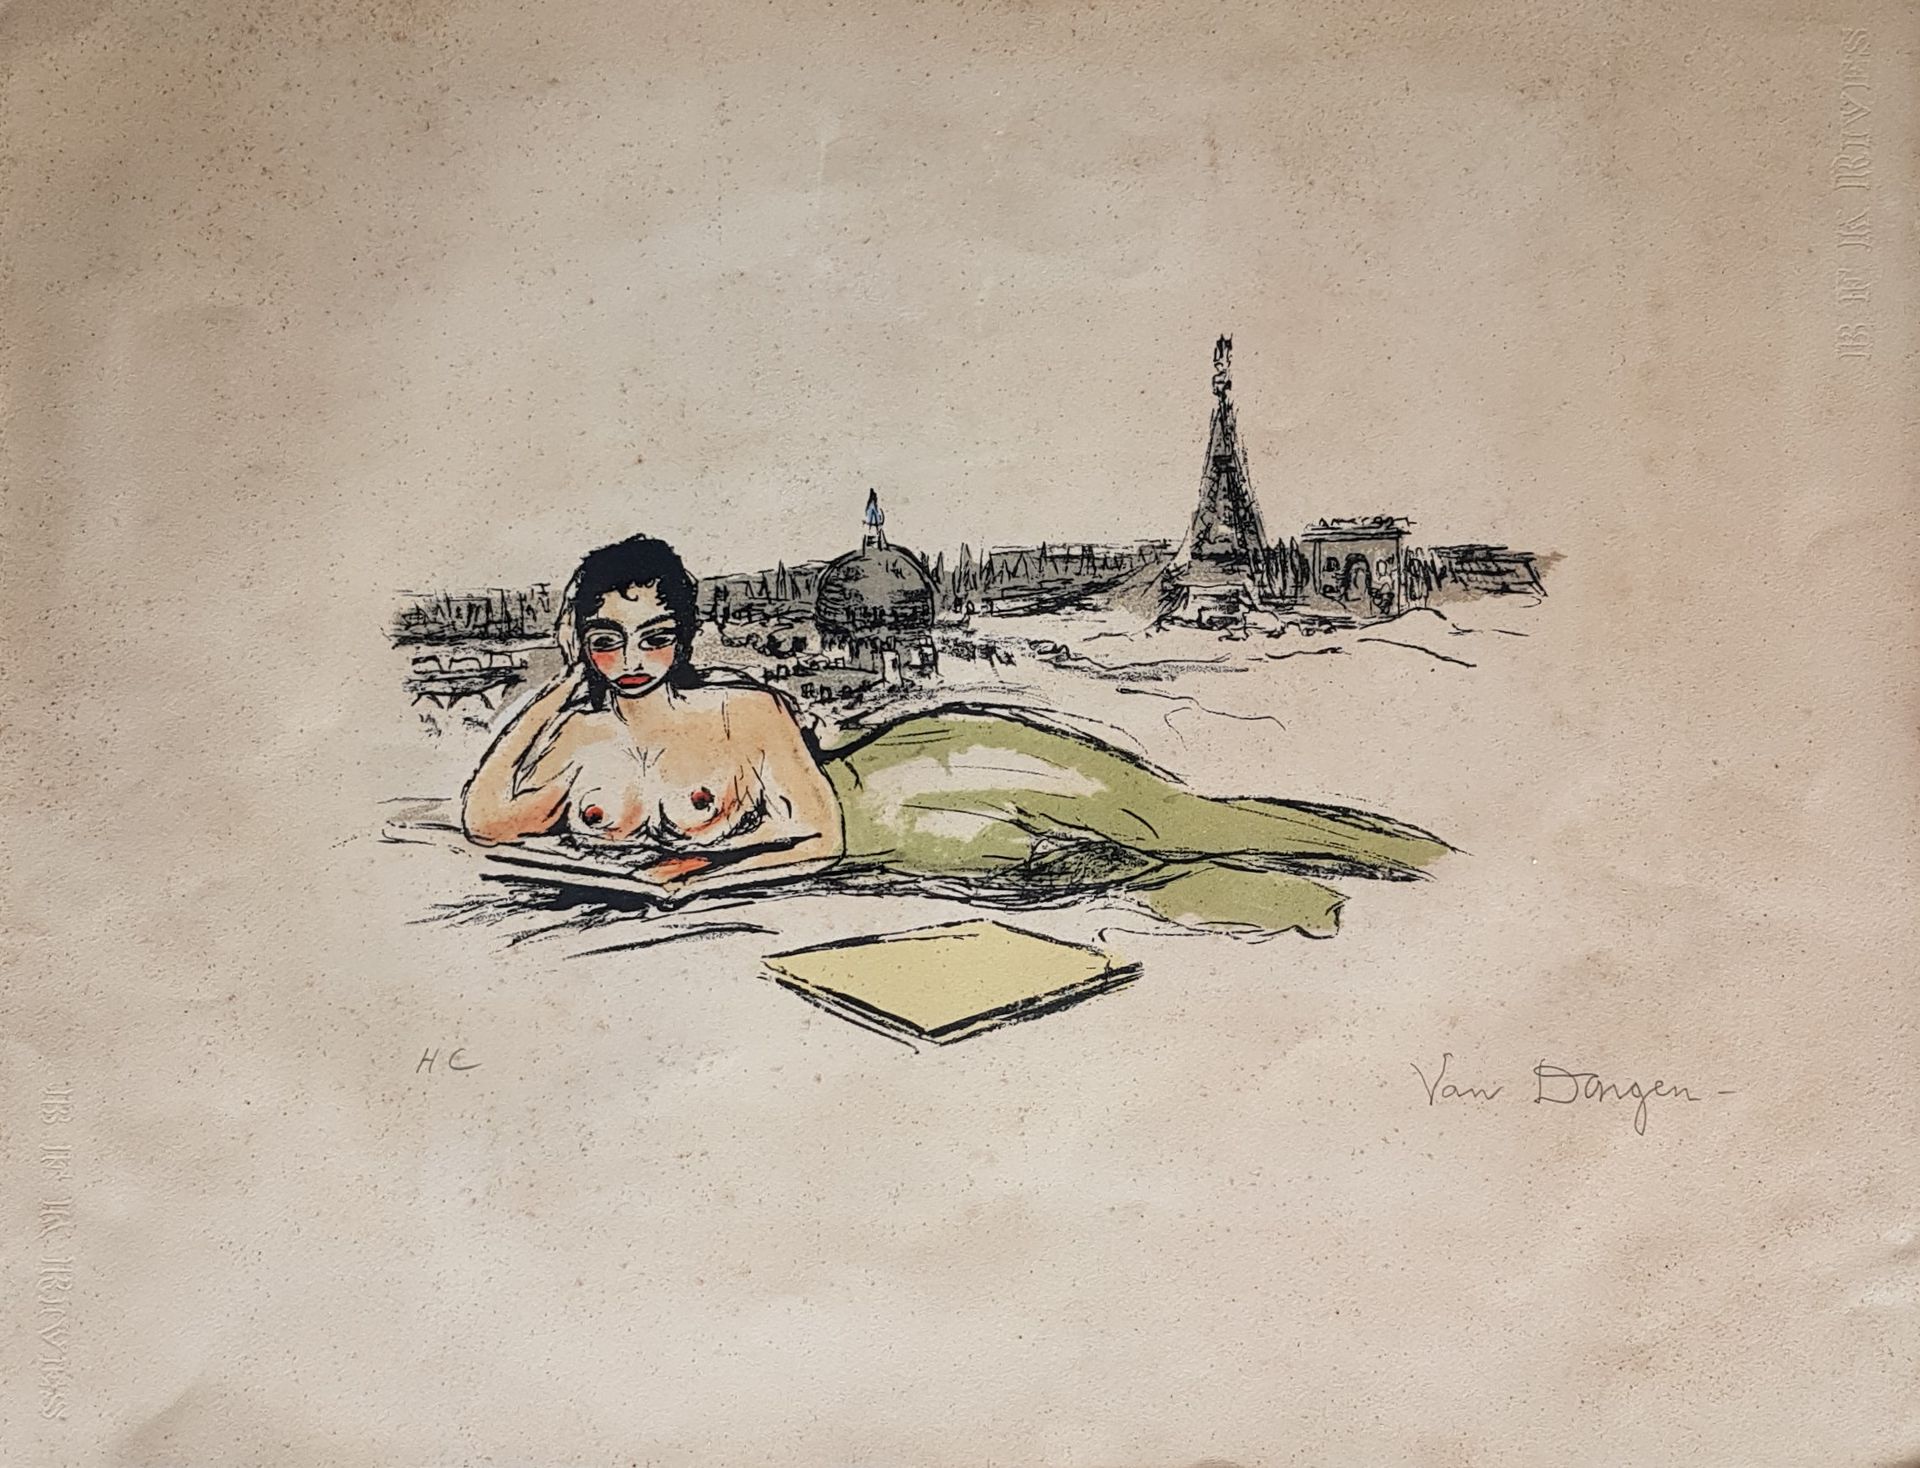 VAN DONGEN Kess "La Seine ou la Sirène" 1962年的彩色石板画 "H.C"（Hors Commerce），50 x 65&hellip;